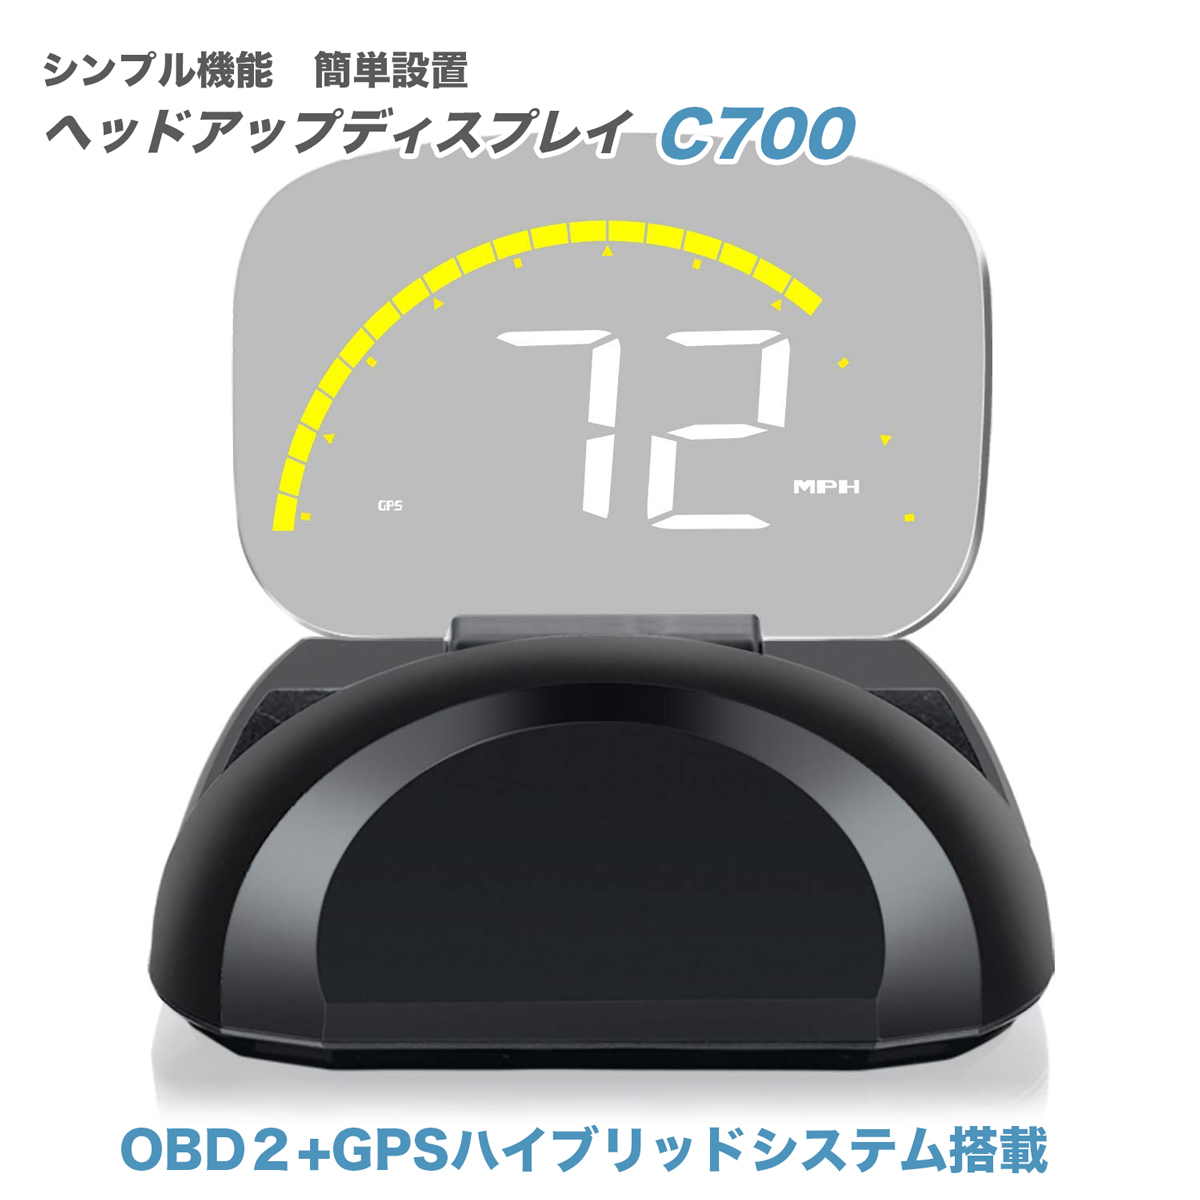 ヘッドアップディスプレイ HUD GPS ハイブリッド 投影 スピードメーター デジタル プロジェクター 最先端ラウンドフォルムモデル 近未来 C700JP